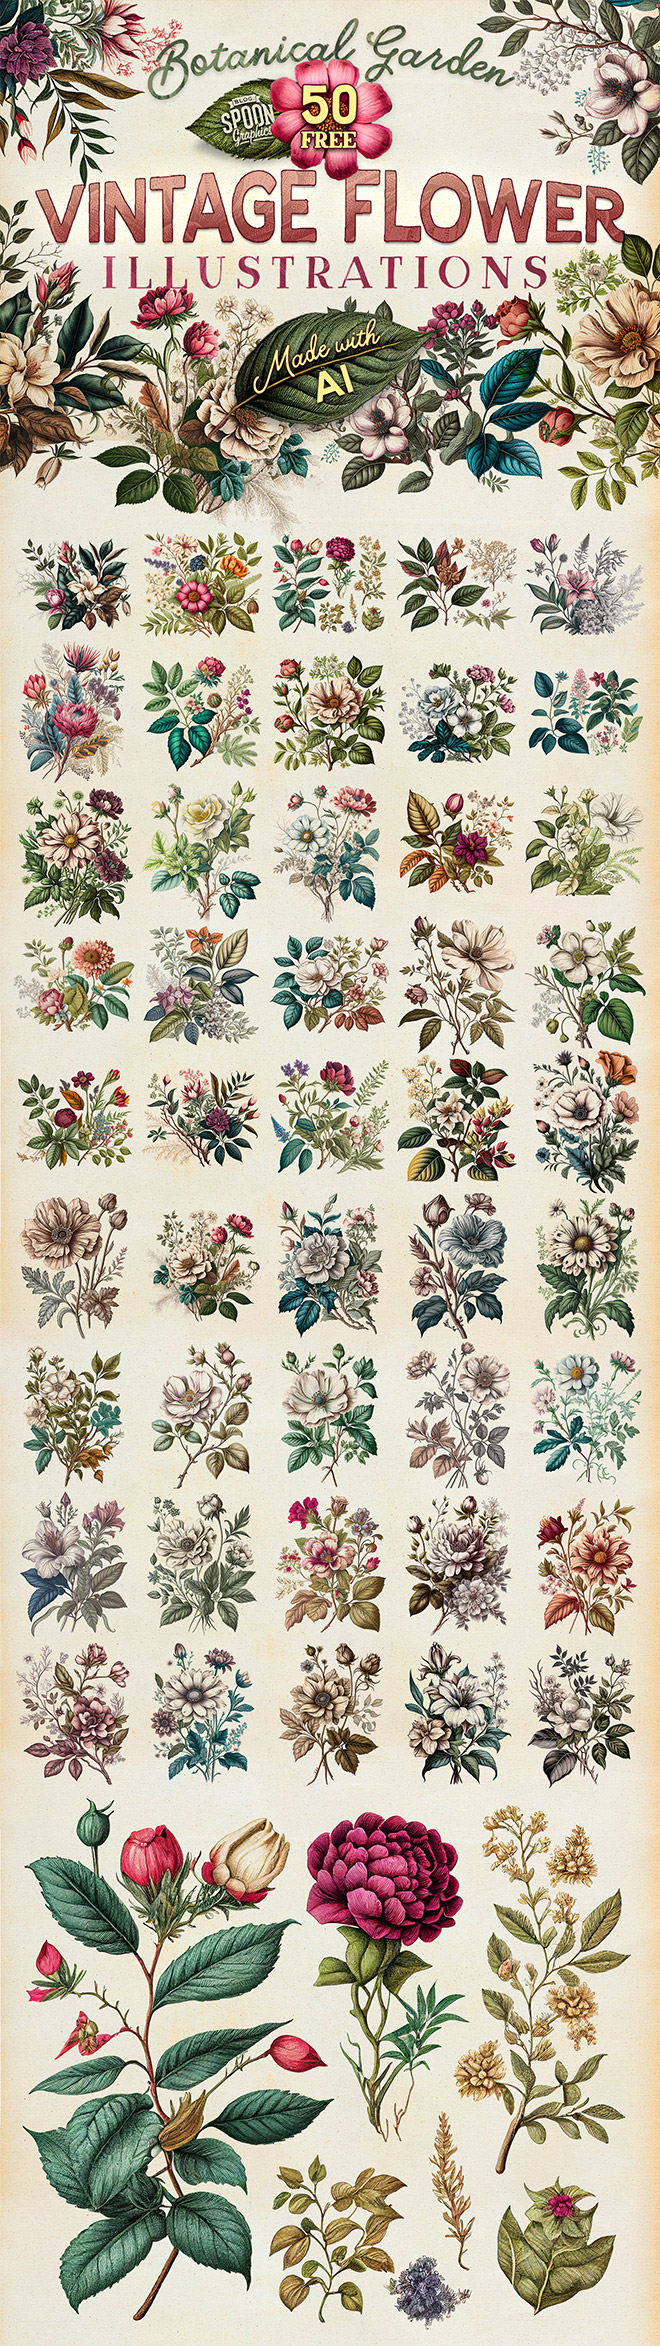 50 Free Botanical Garden Vintage Flower Illustrations